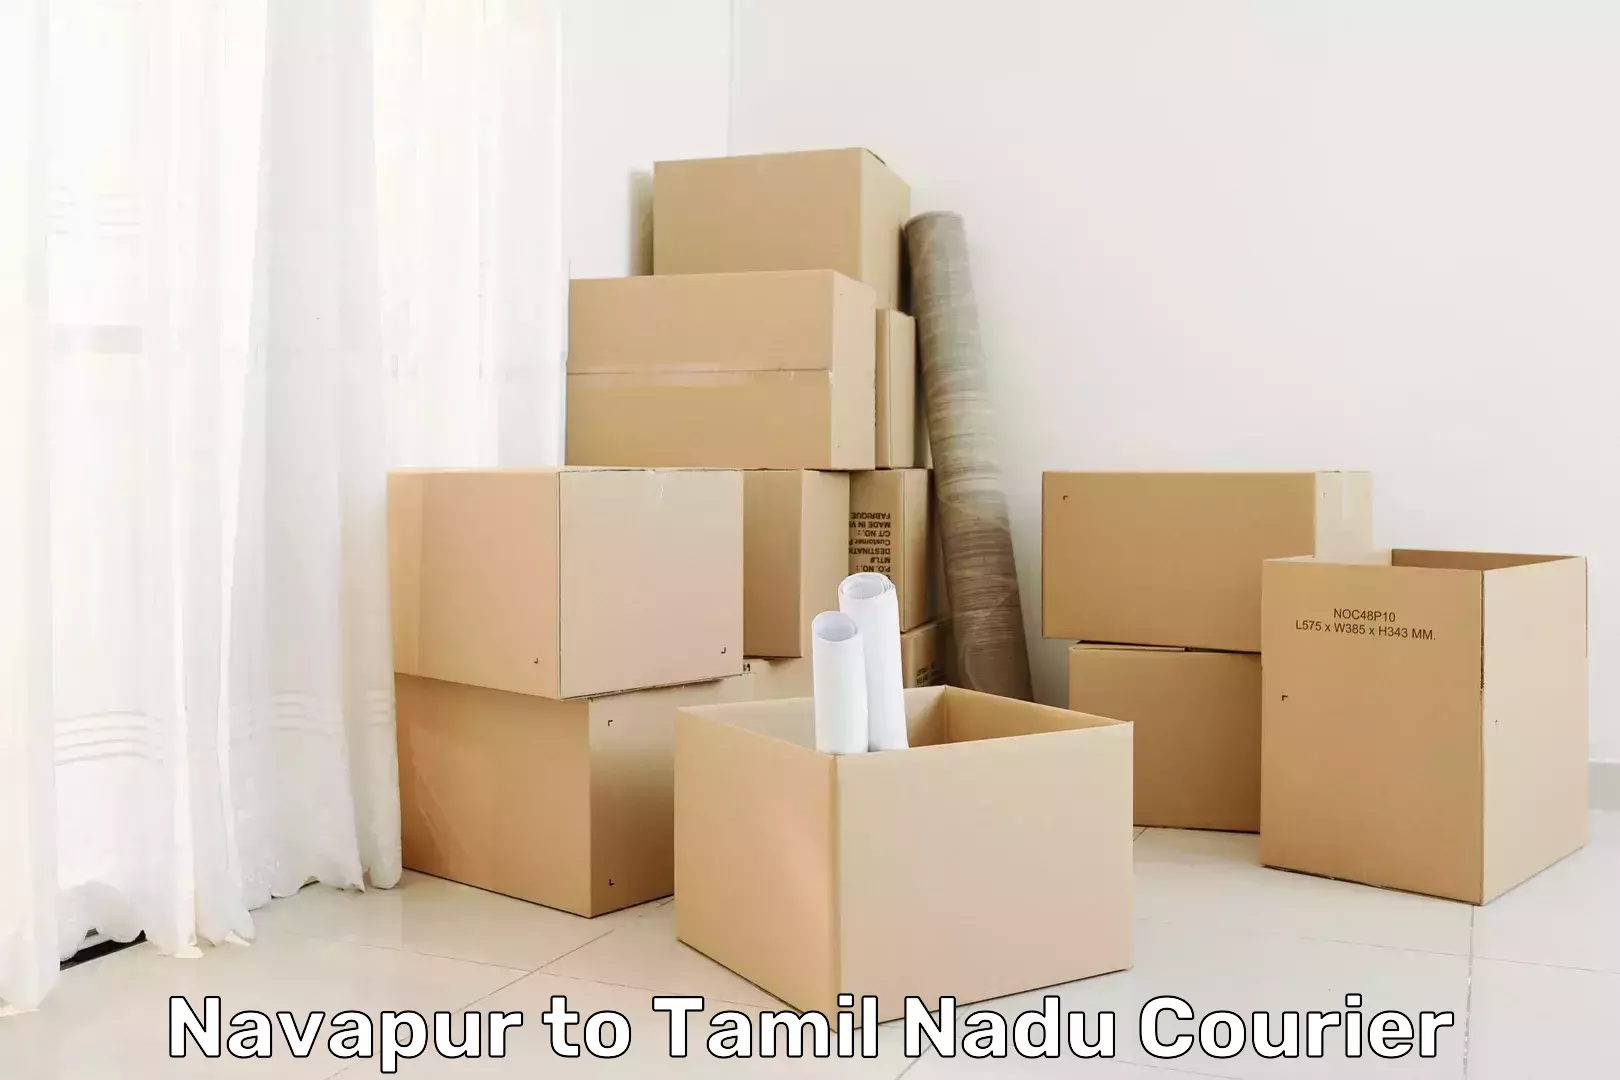 Speedy delivery service Navapur to Annur